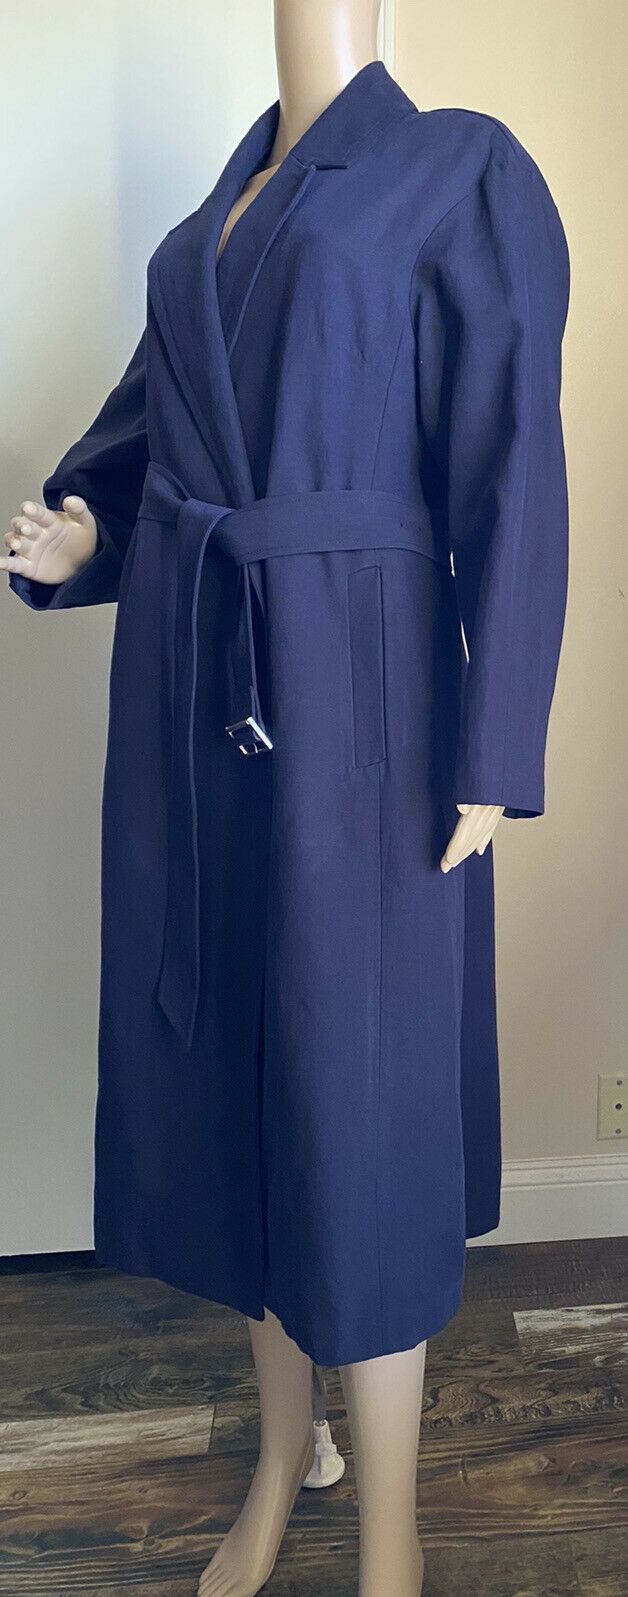 New $3441 Balenciaga Women’s Trench Coat Royal Blue 4 US/38 It Italy